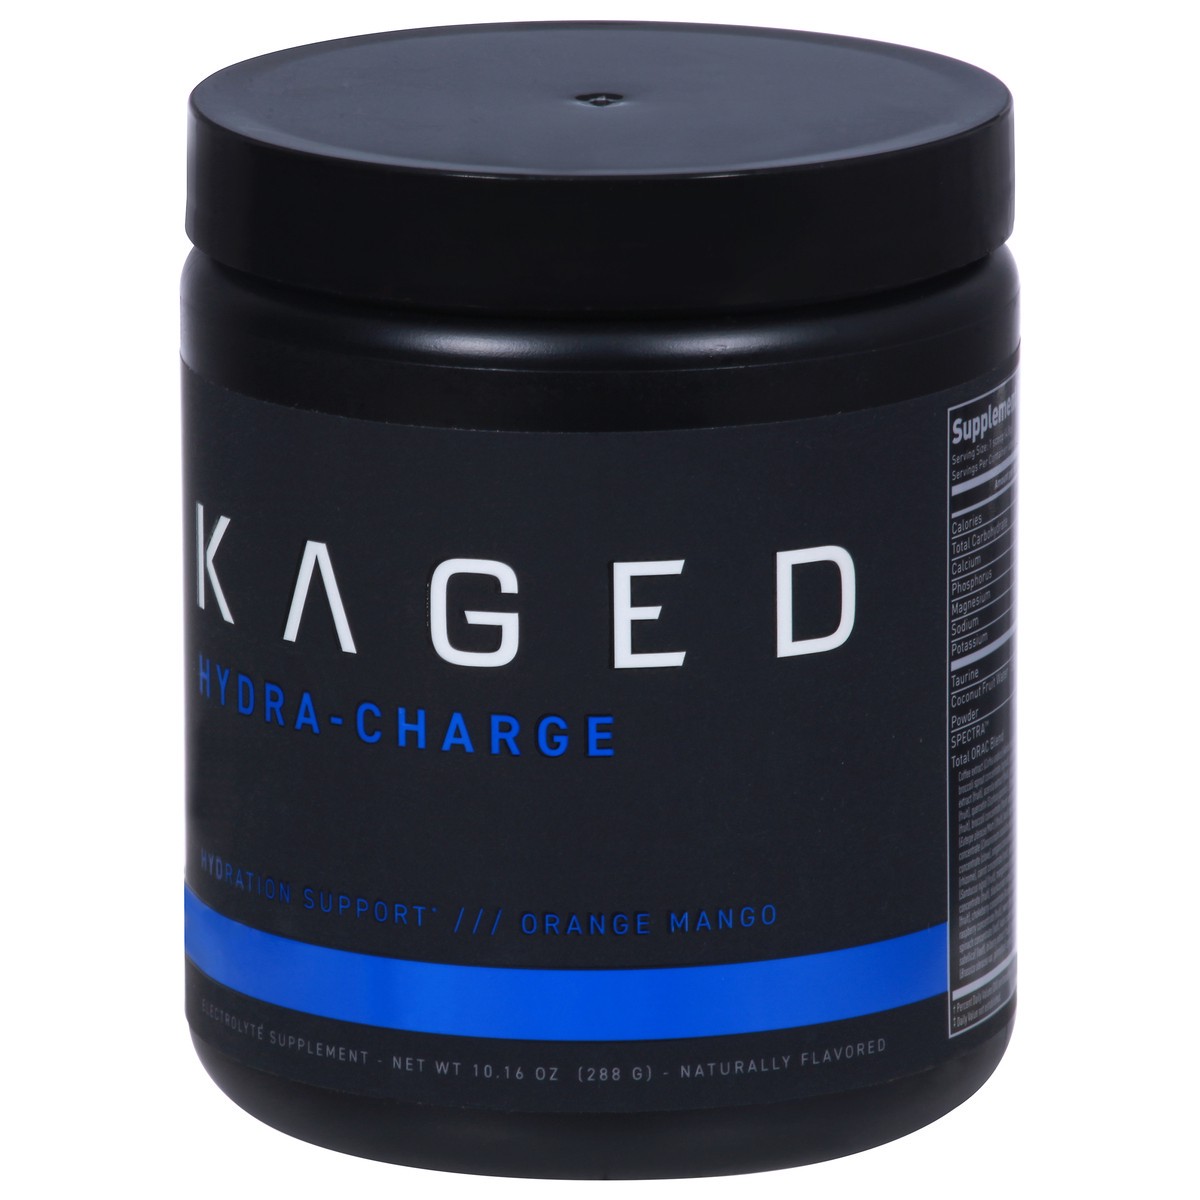 slide 3 of 9, Kaged Hydra-Charge Orange Mango Hydration Support 10.16 oz, 9.73 oz